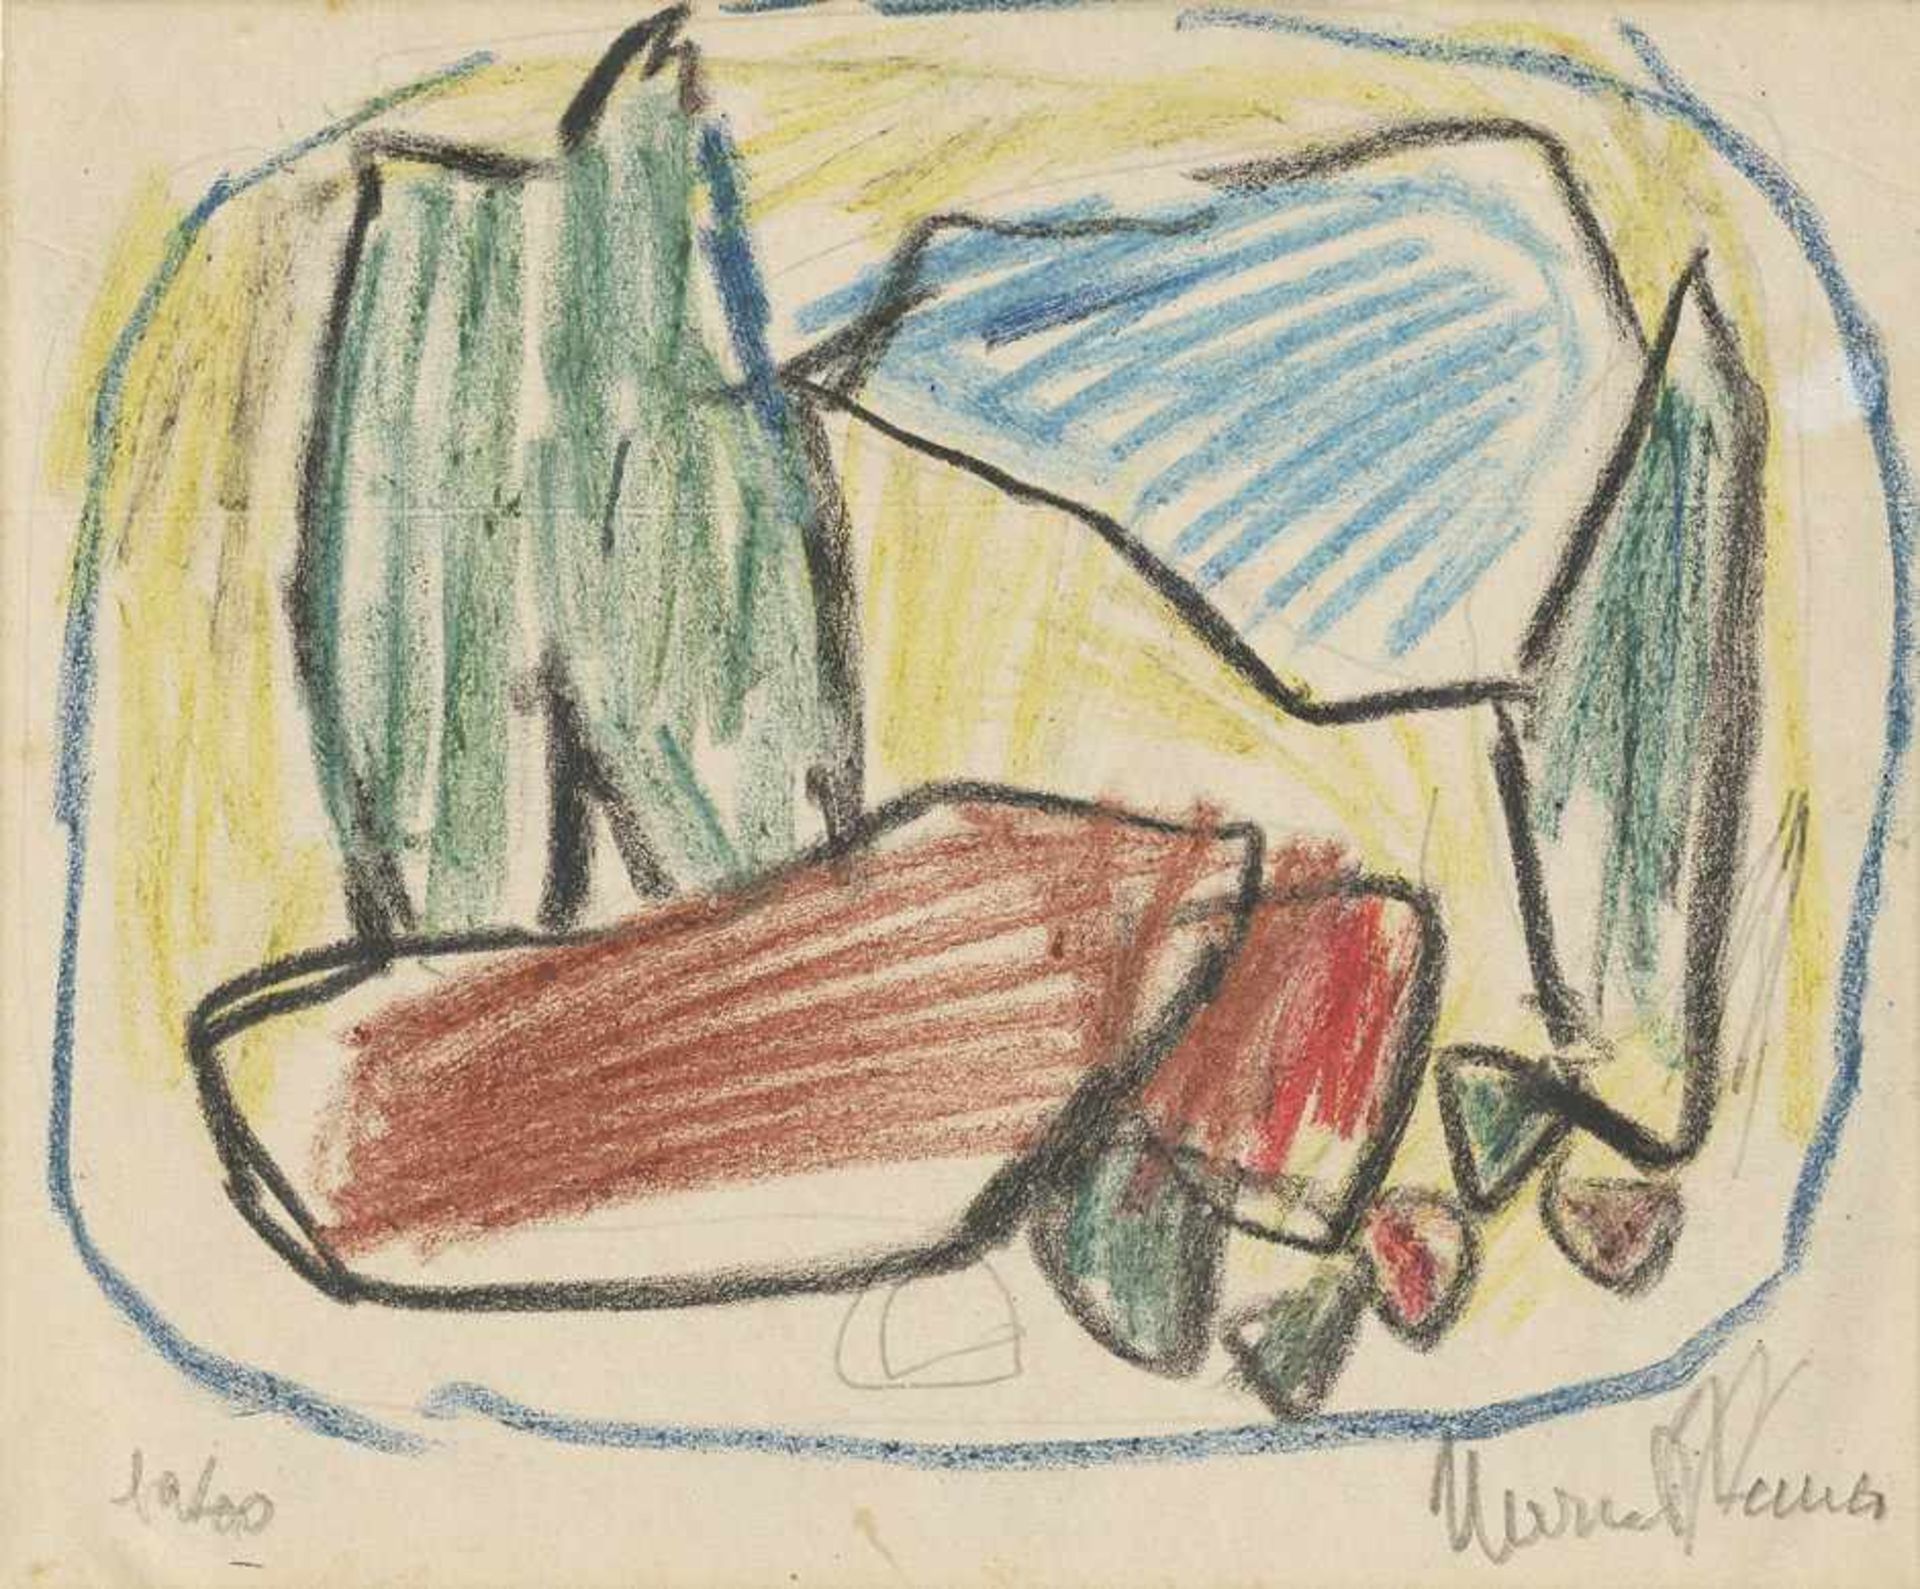 Janco, Marcel: Ohne TitelOhne Titel Farbige Kreiden und Bleistift auf Velin. 1978.16,4 x 19,1 cm.